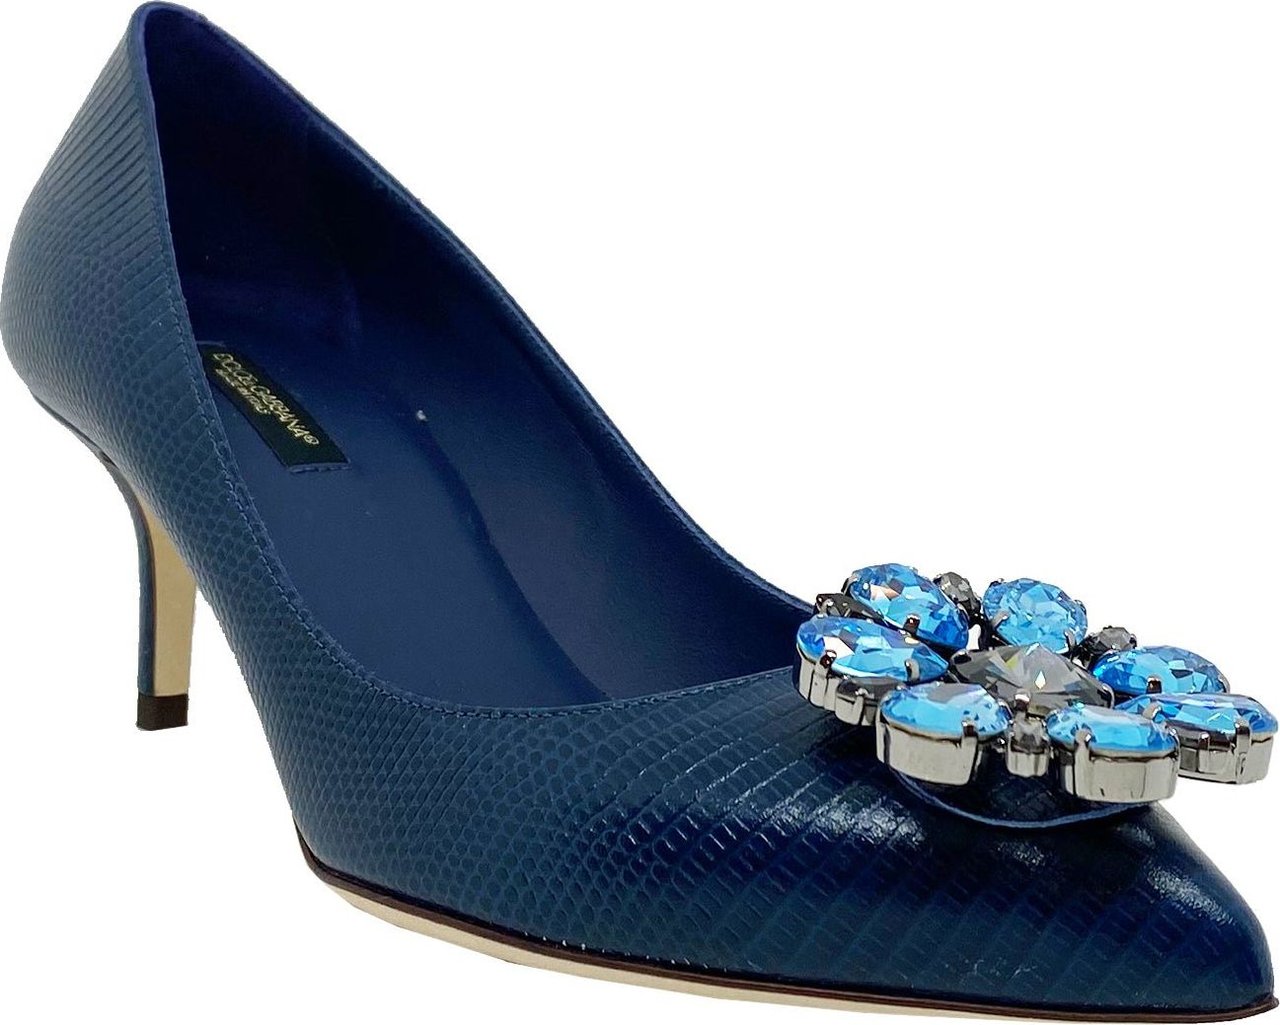 Dolce & Gabbana Dolce & Gabbana Crystal Embellished Pumps Blue